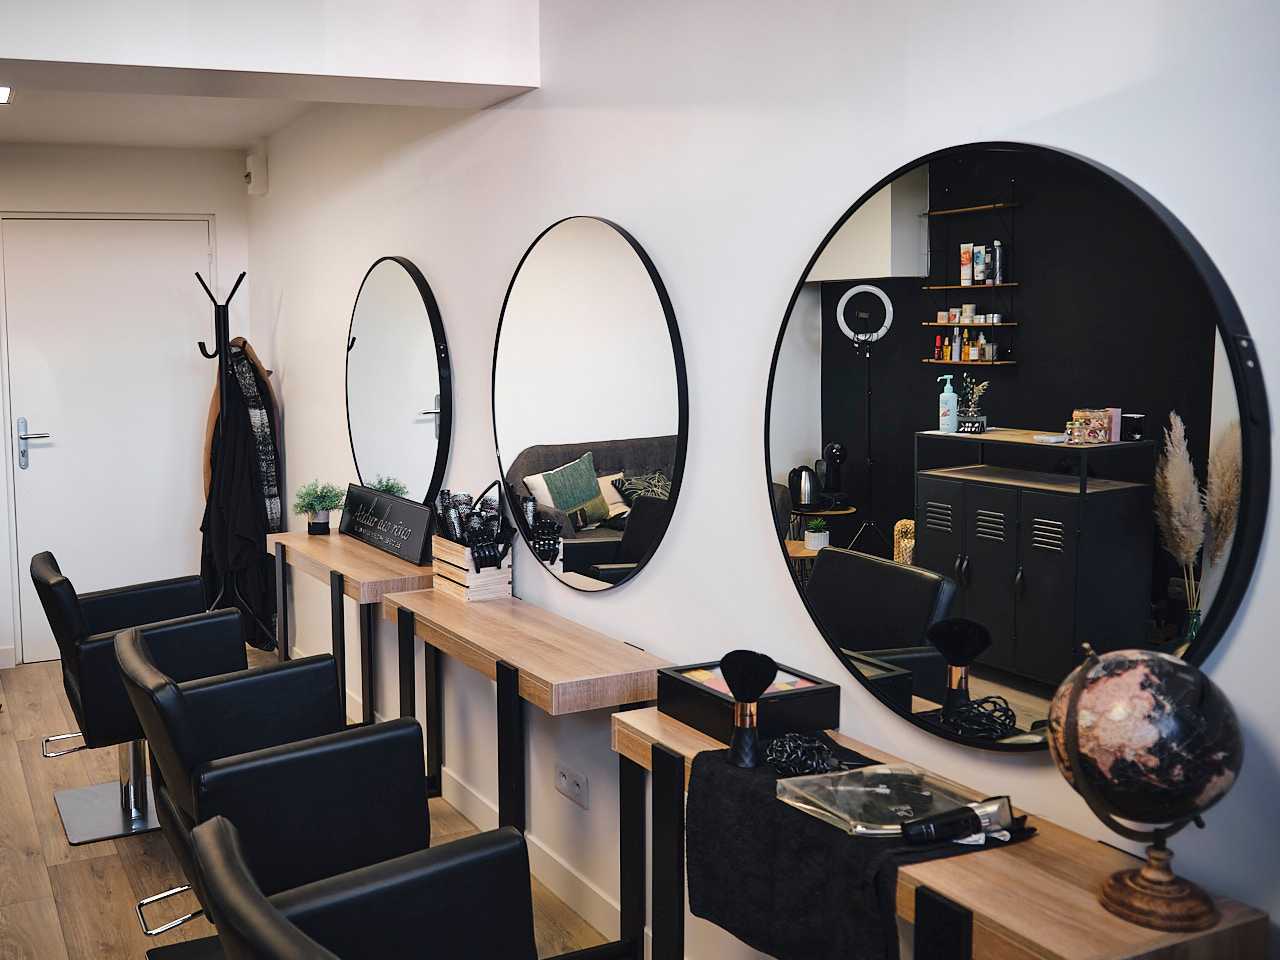 Le salon de coiffure de MK Hairstylist, les trois sièges de coiffure avec en face des miroirs ronds.